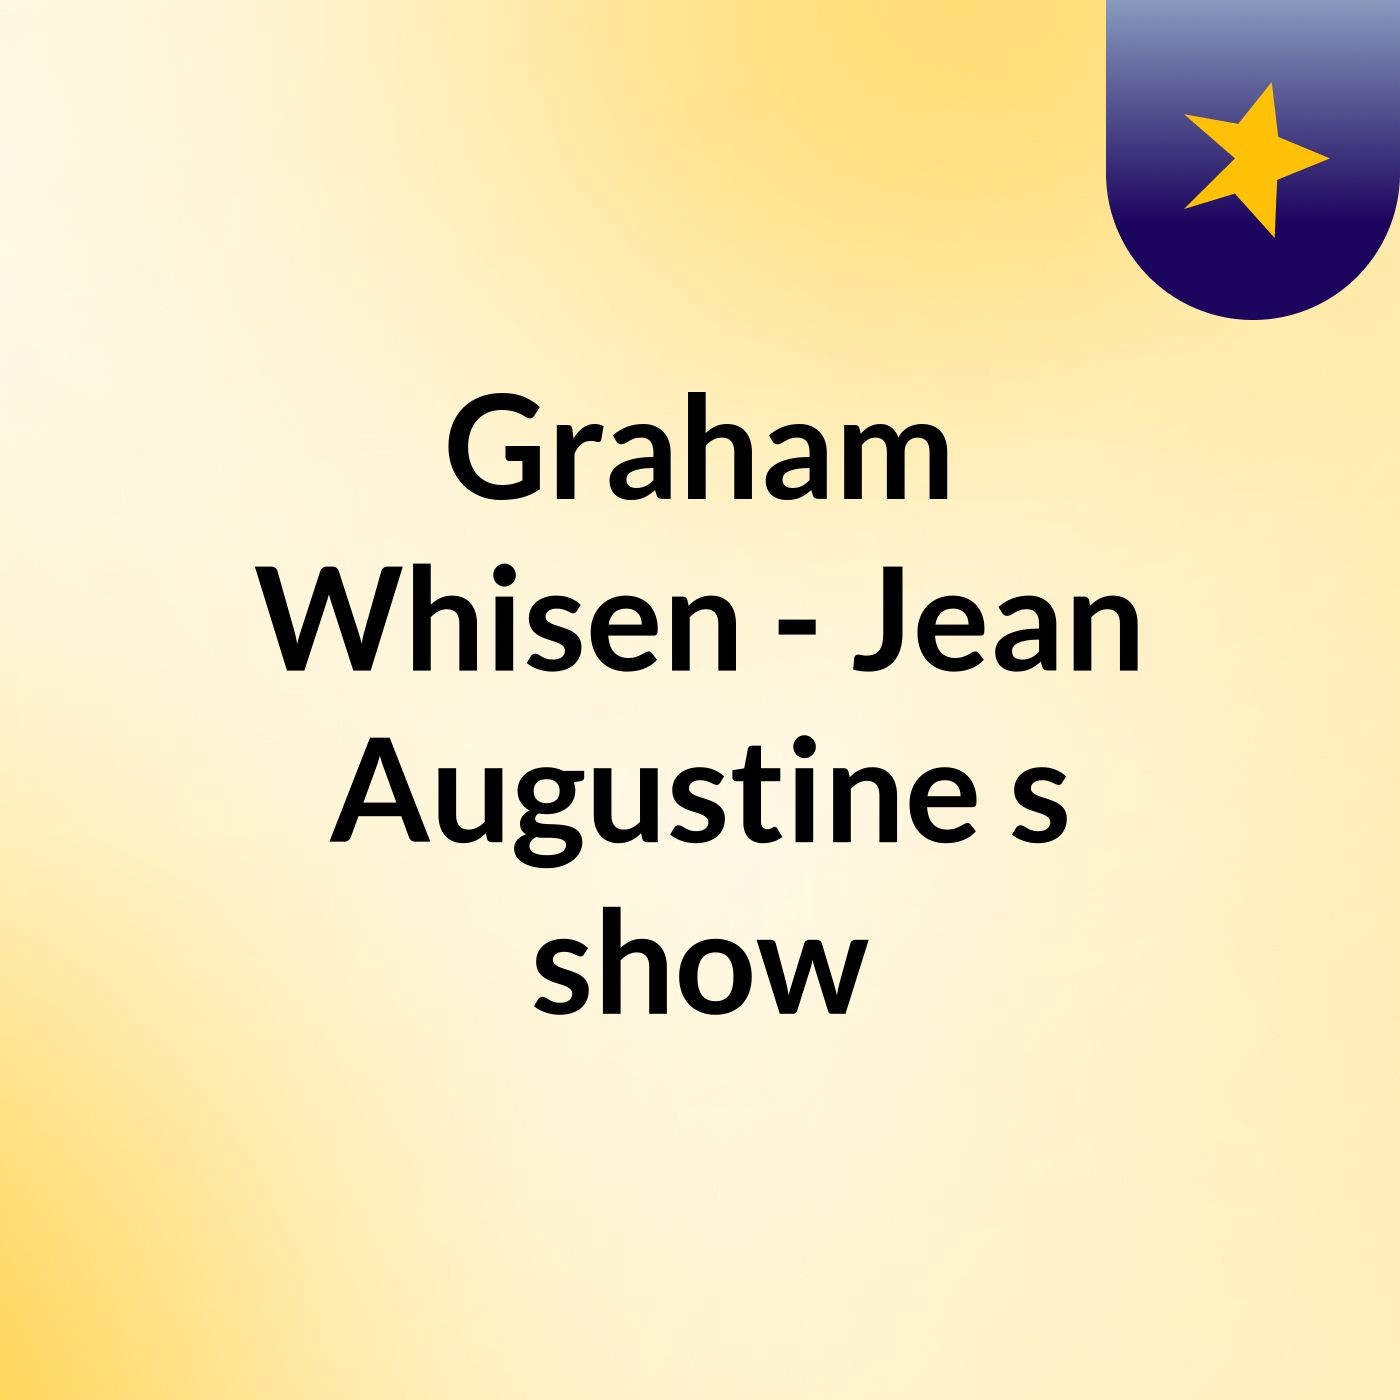 Graham Whisen - Jean Augustine's show